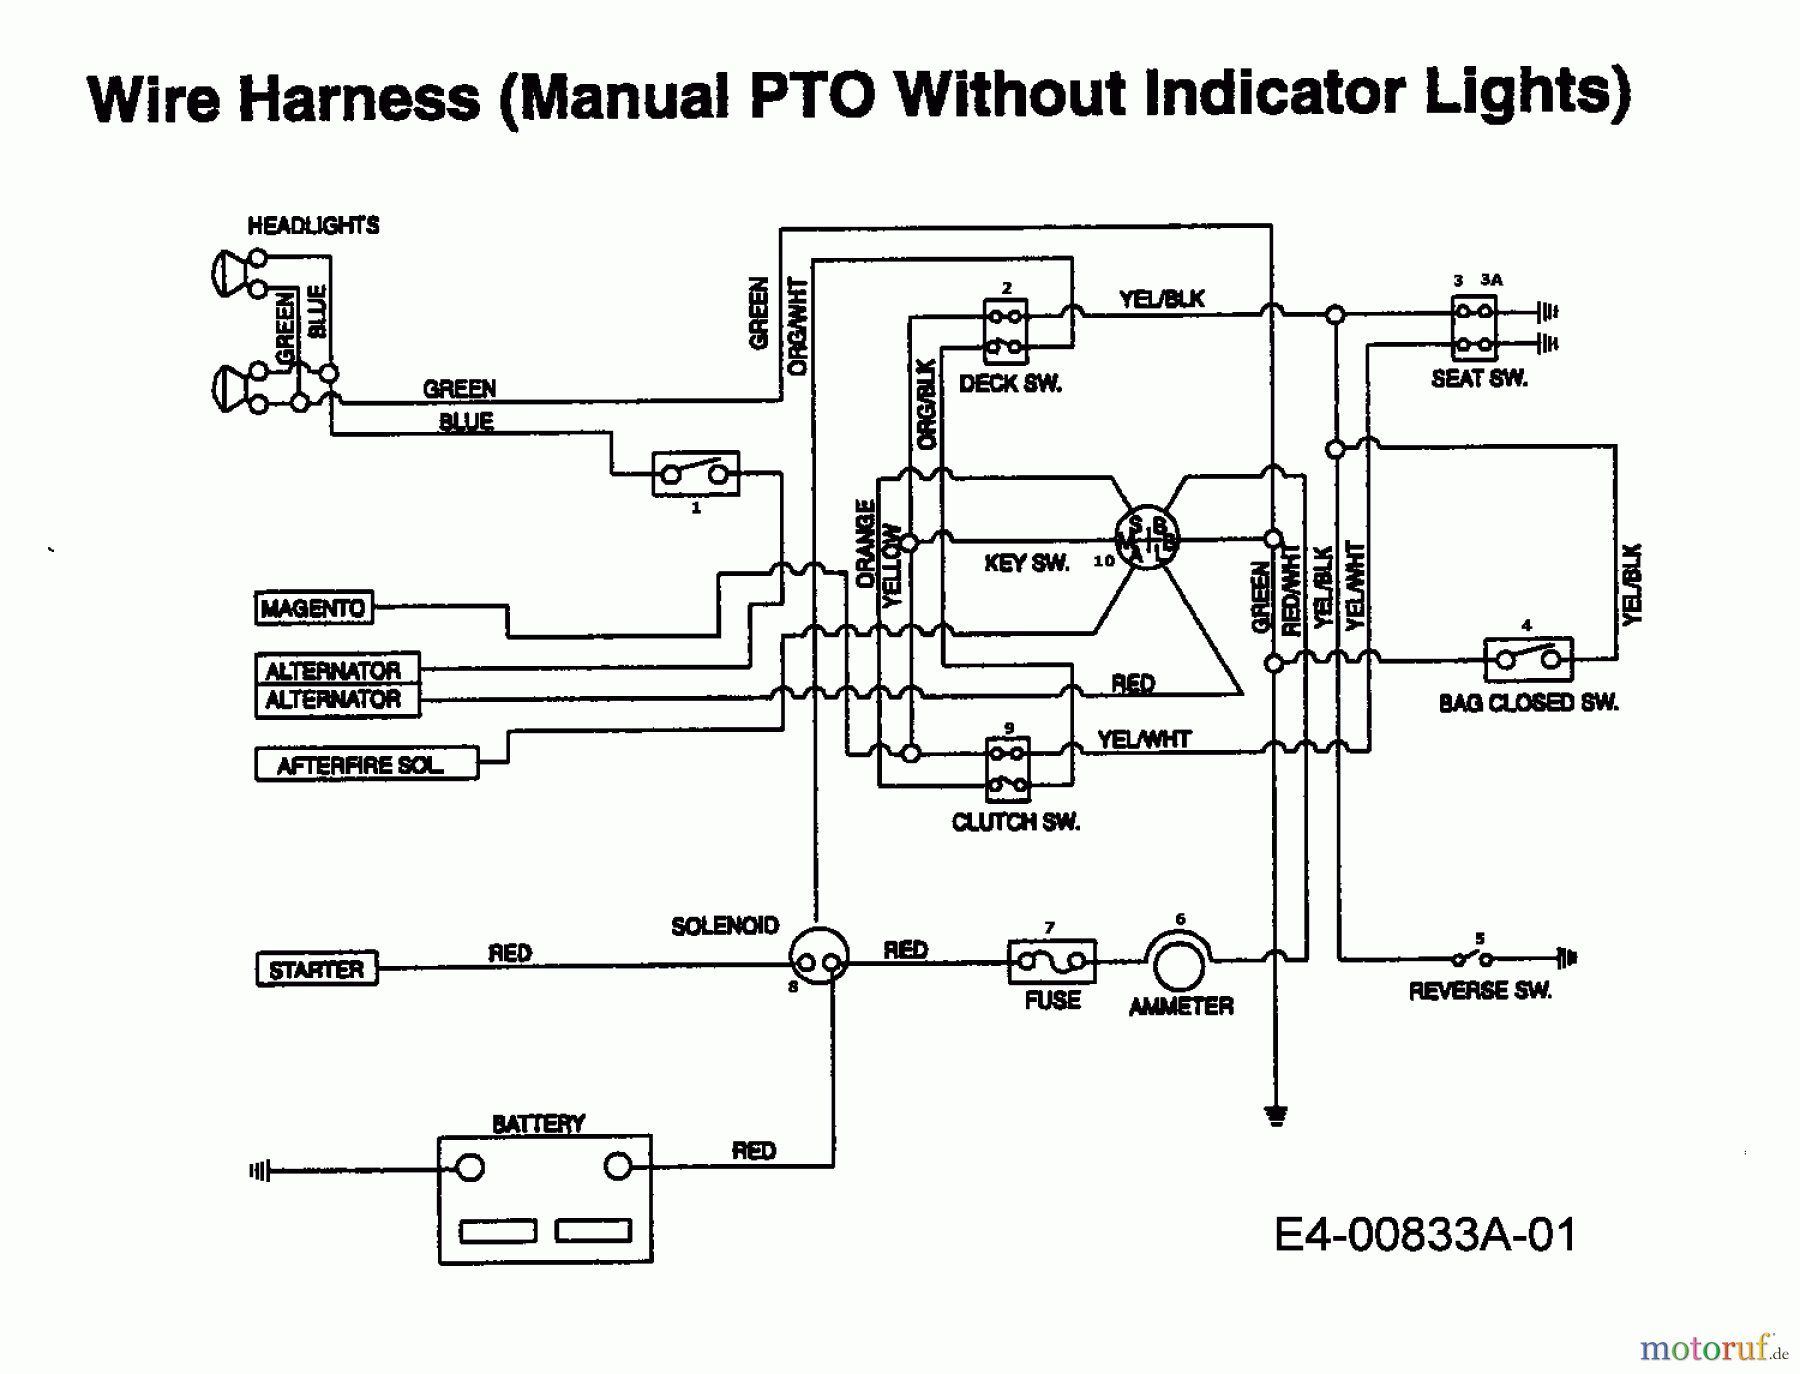  MTD Rasentraktoren EH/130 13AA795N678  (1998) Schaltplan ohne Kontrolleuchten